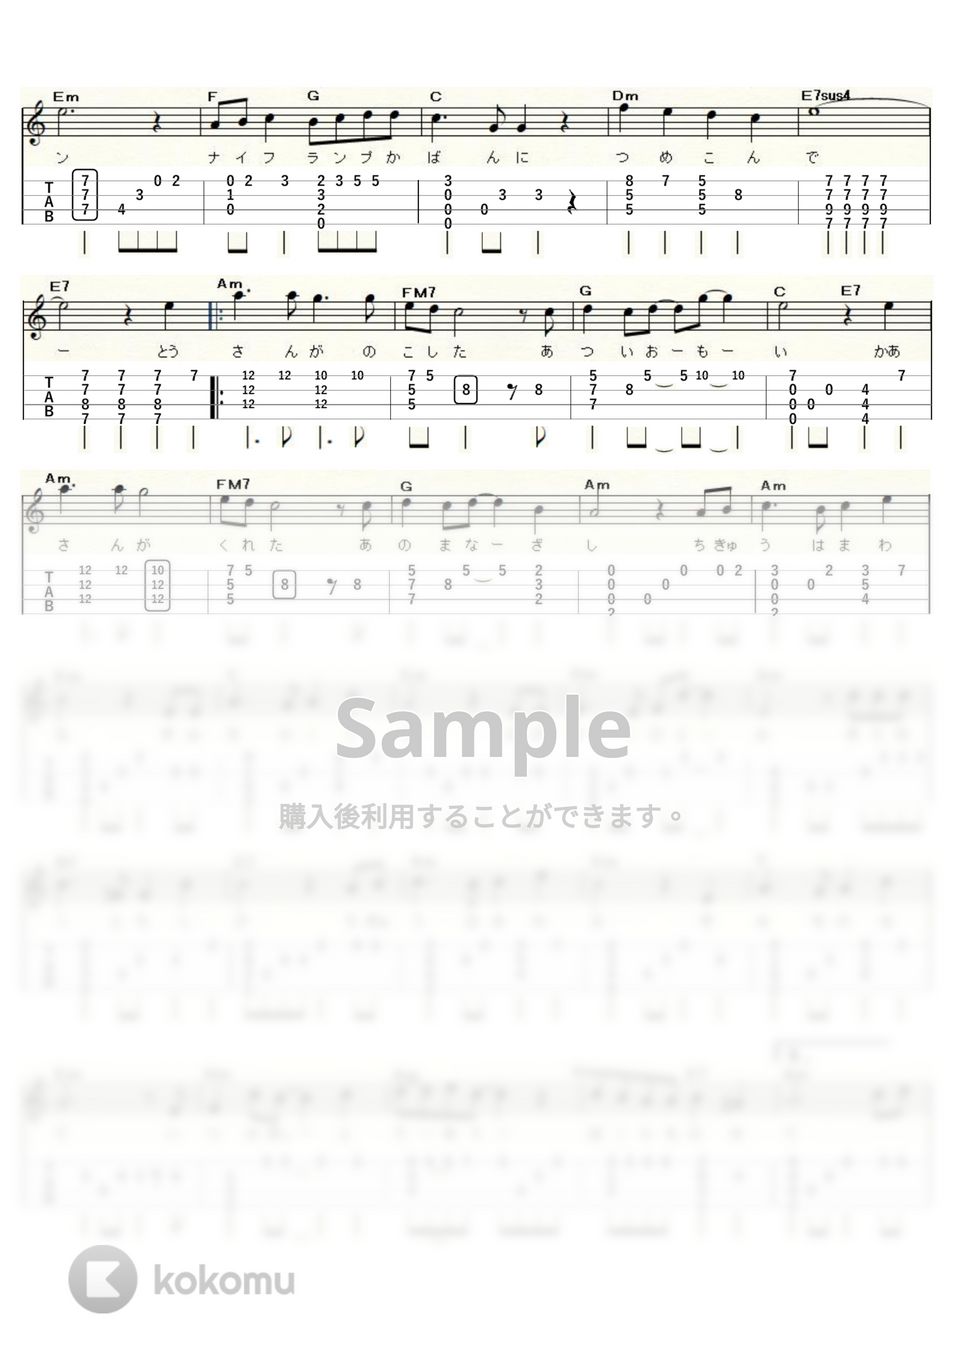 井上あずみ - 君をのせて～天空の城ラピュタ～ (ｳｸﾚﾚｿﾛ / High-G,Low-G / 中～上級) by ukulelepapa